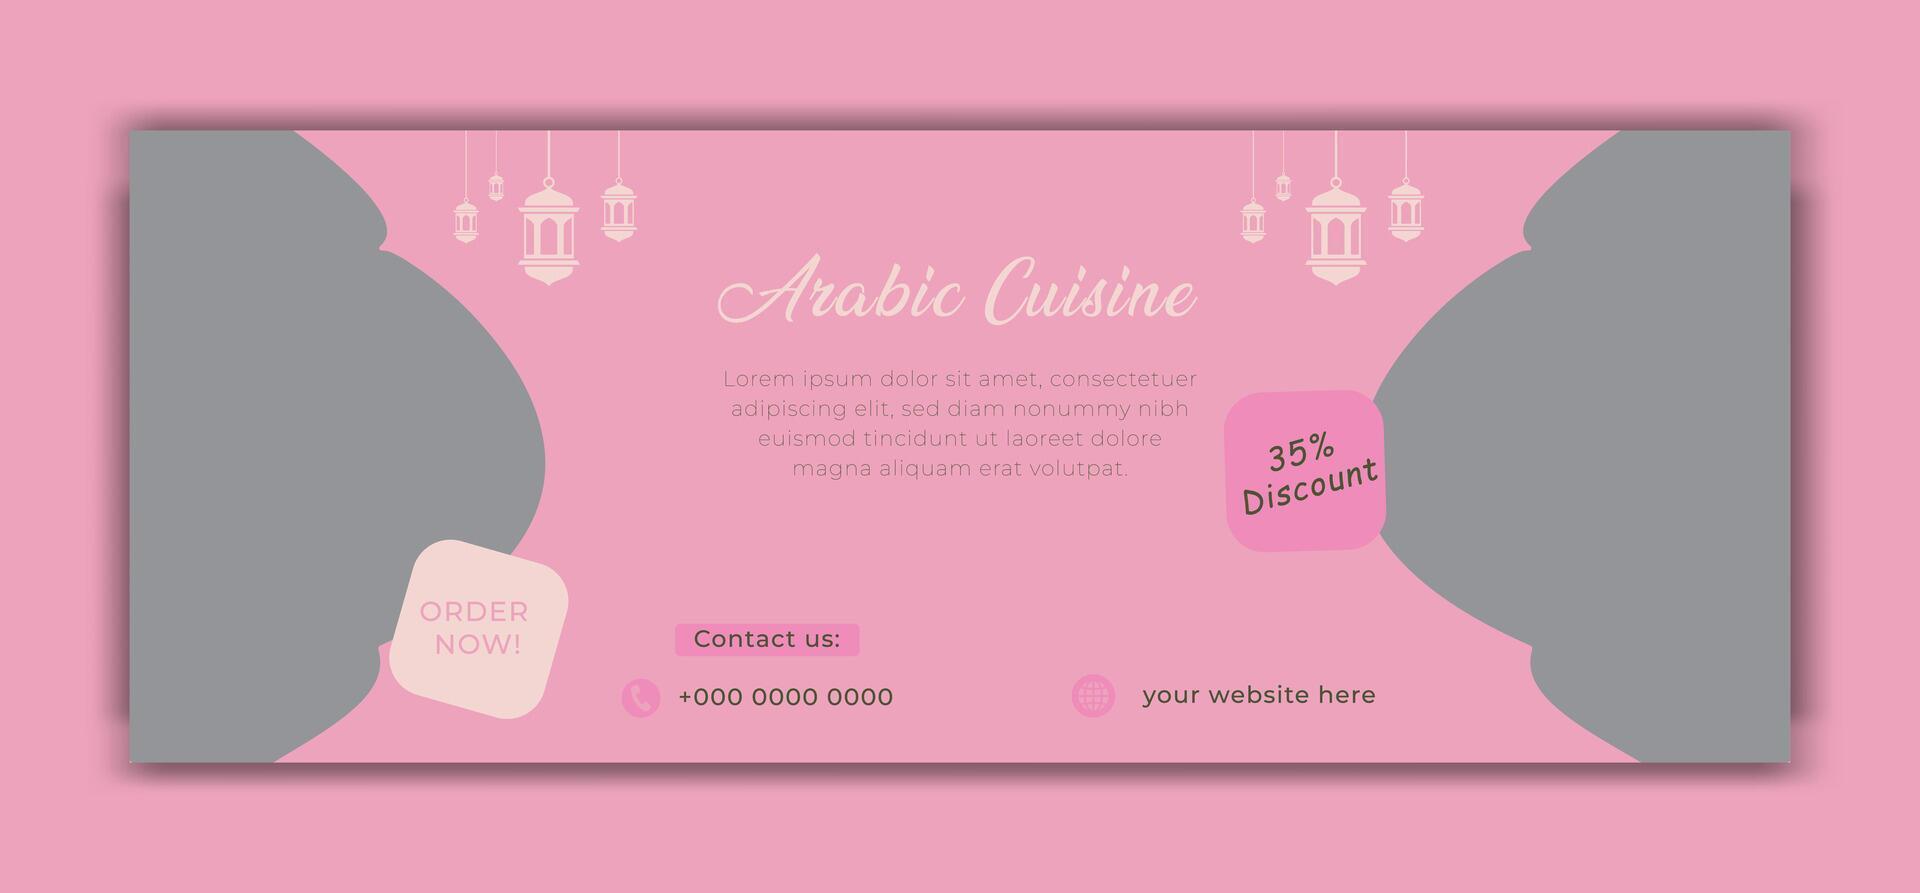 Arabisch Essen Ramadan kareem iftar Sozial Medien Startseite Design vektor